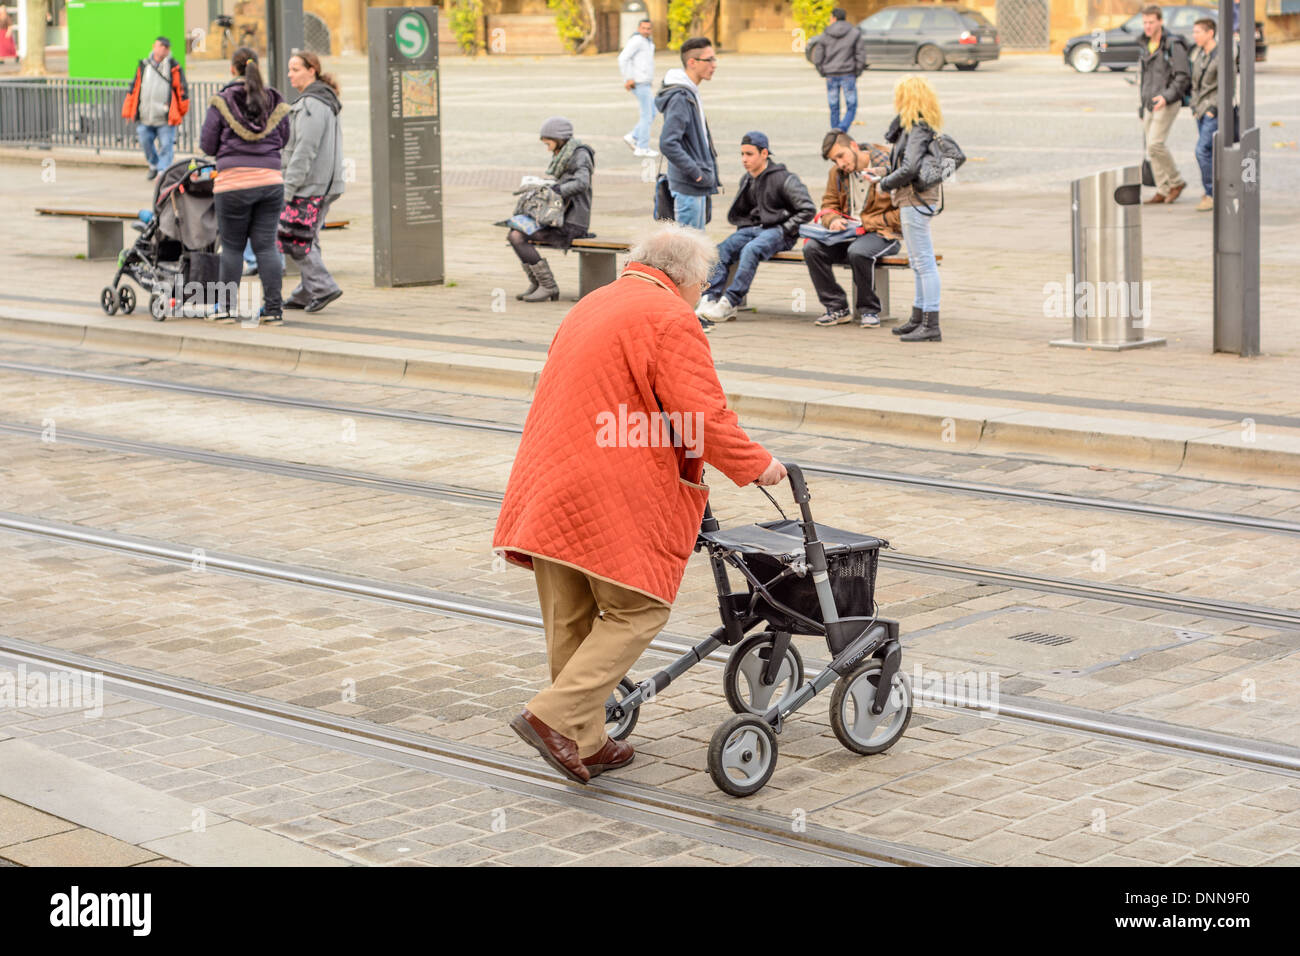 Alte Dame mit Orangen Mantel und Rollator mit der Handbremse, überqueren einer Straße mit Embeded Straßenbahnschienen – Heilbronn Deutschland Stockfoto